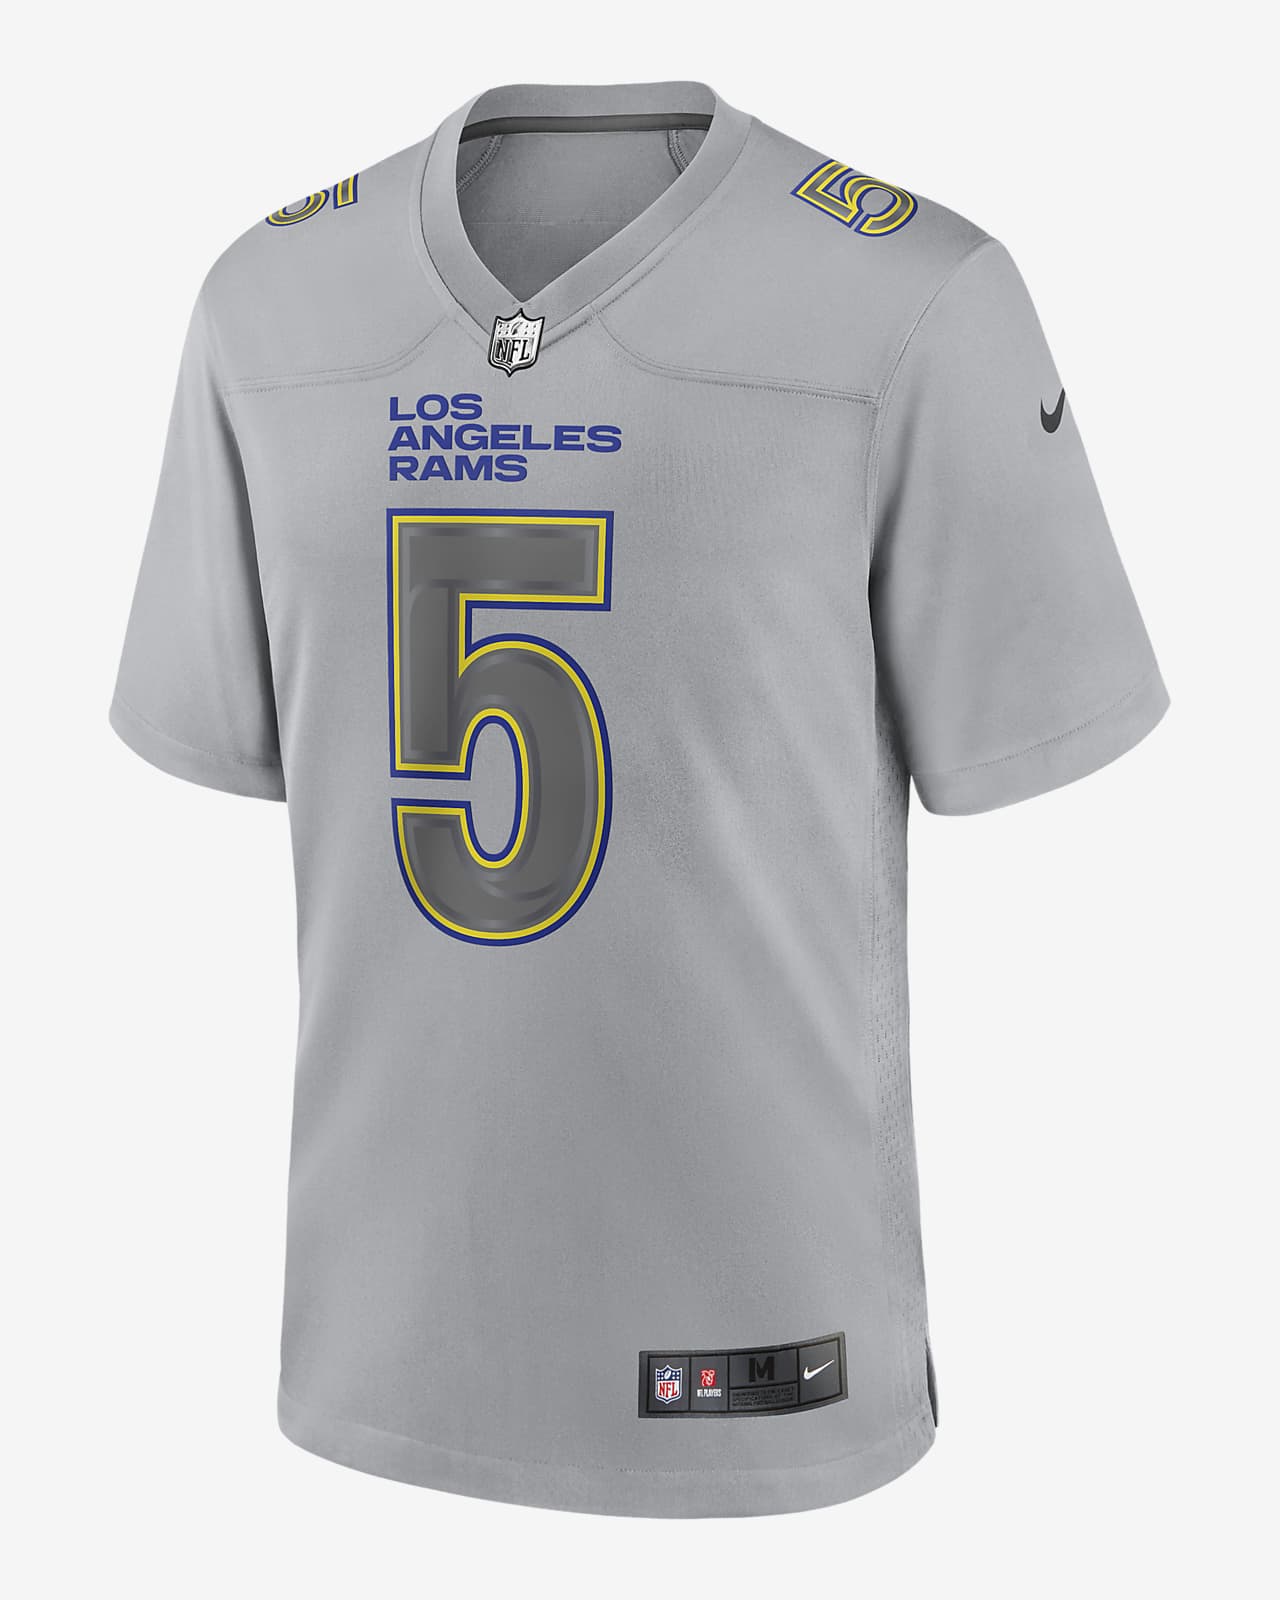 Asesino claro Celsius Jersey de fútbol americano a la moda para hombre Los Angeles Rams  Atmosphere de la NFL (Jalen Ramsey). Nike.com